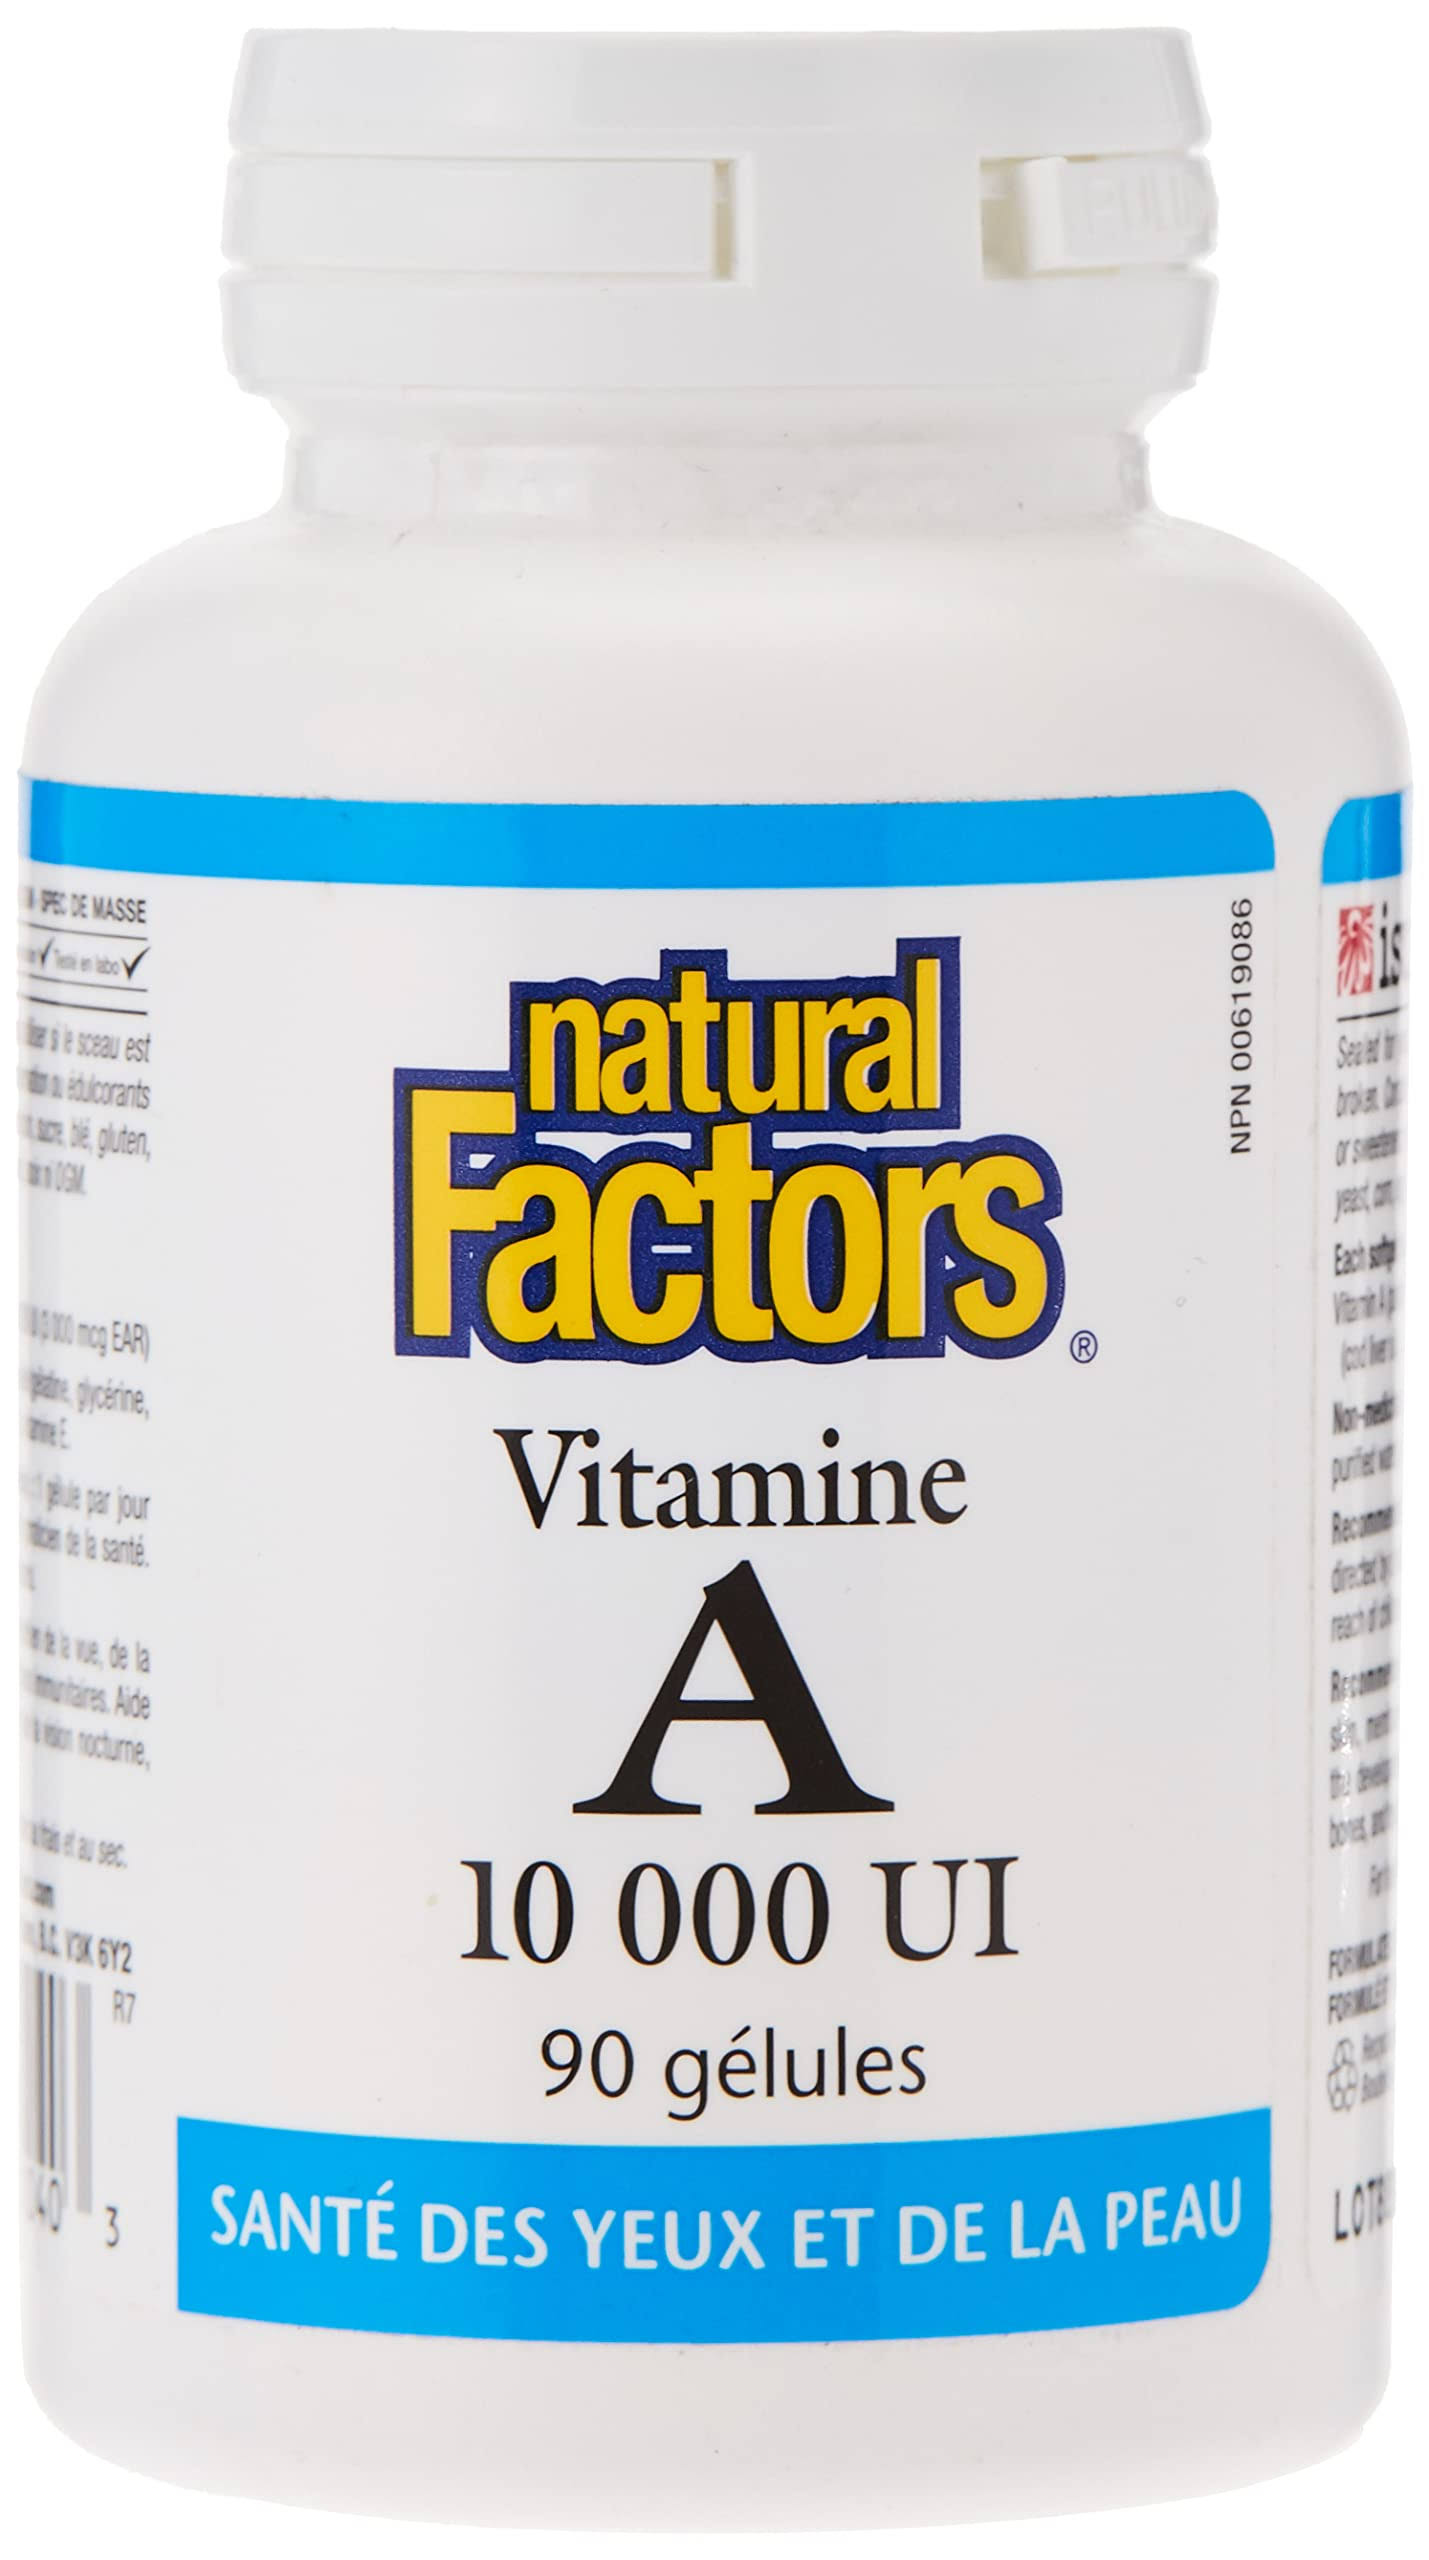 Natural Factors Vitamin A (10000 IU, 90 Softgels)